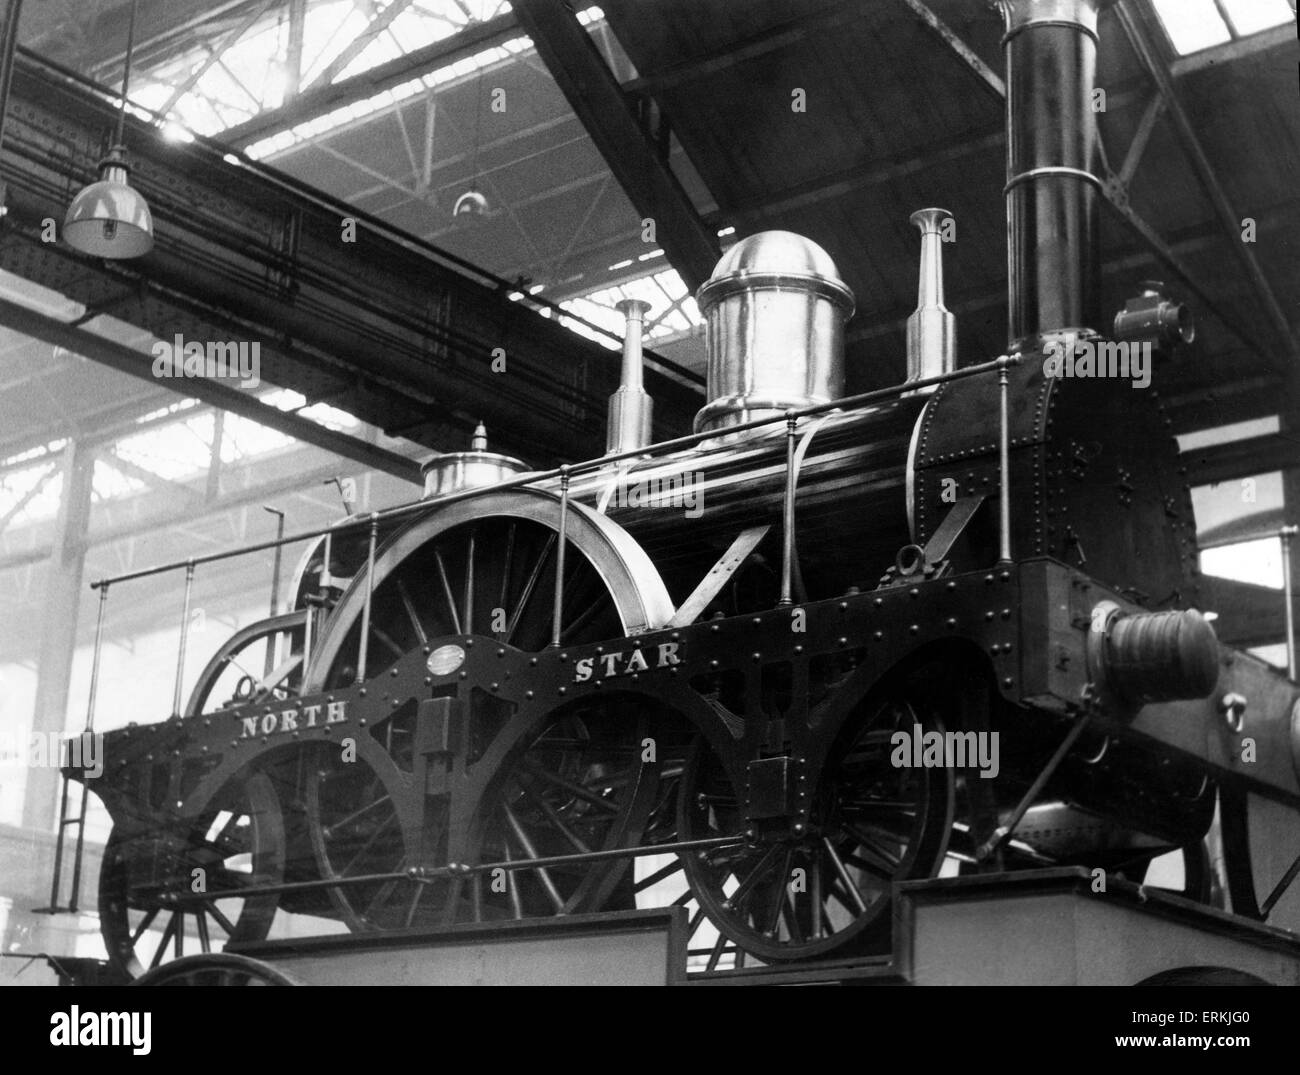 Le Great Western Railway (GWR) North Star Star Class locomotive à vapeur construite par Robert Louis Stephenson en 1837, à l'affiche à Swindon. Mars 1960. Banque D'Images